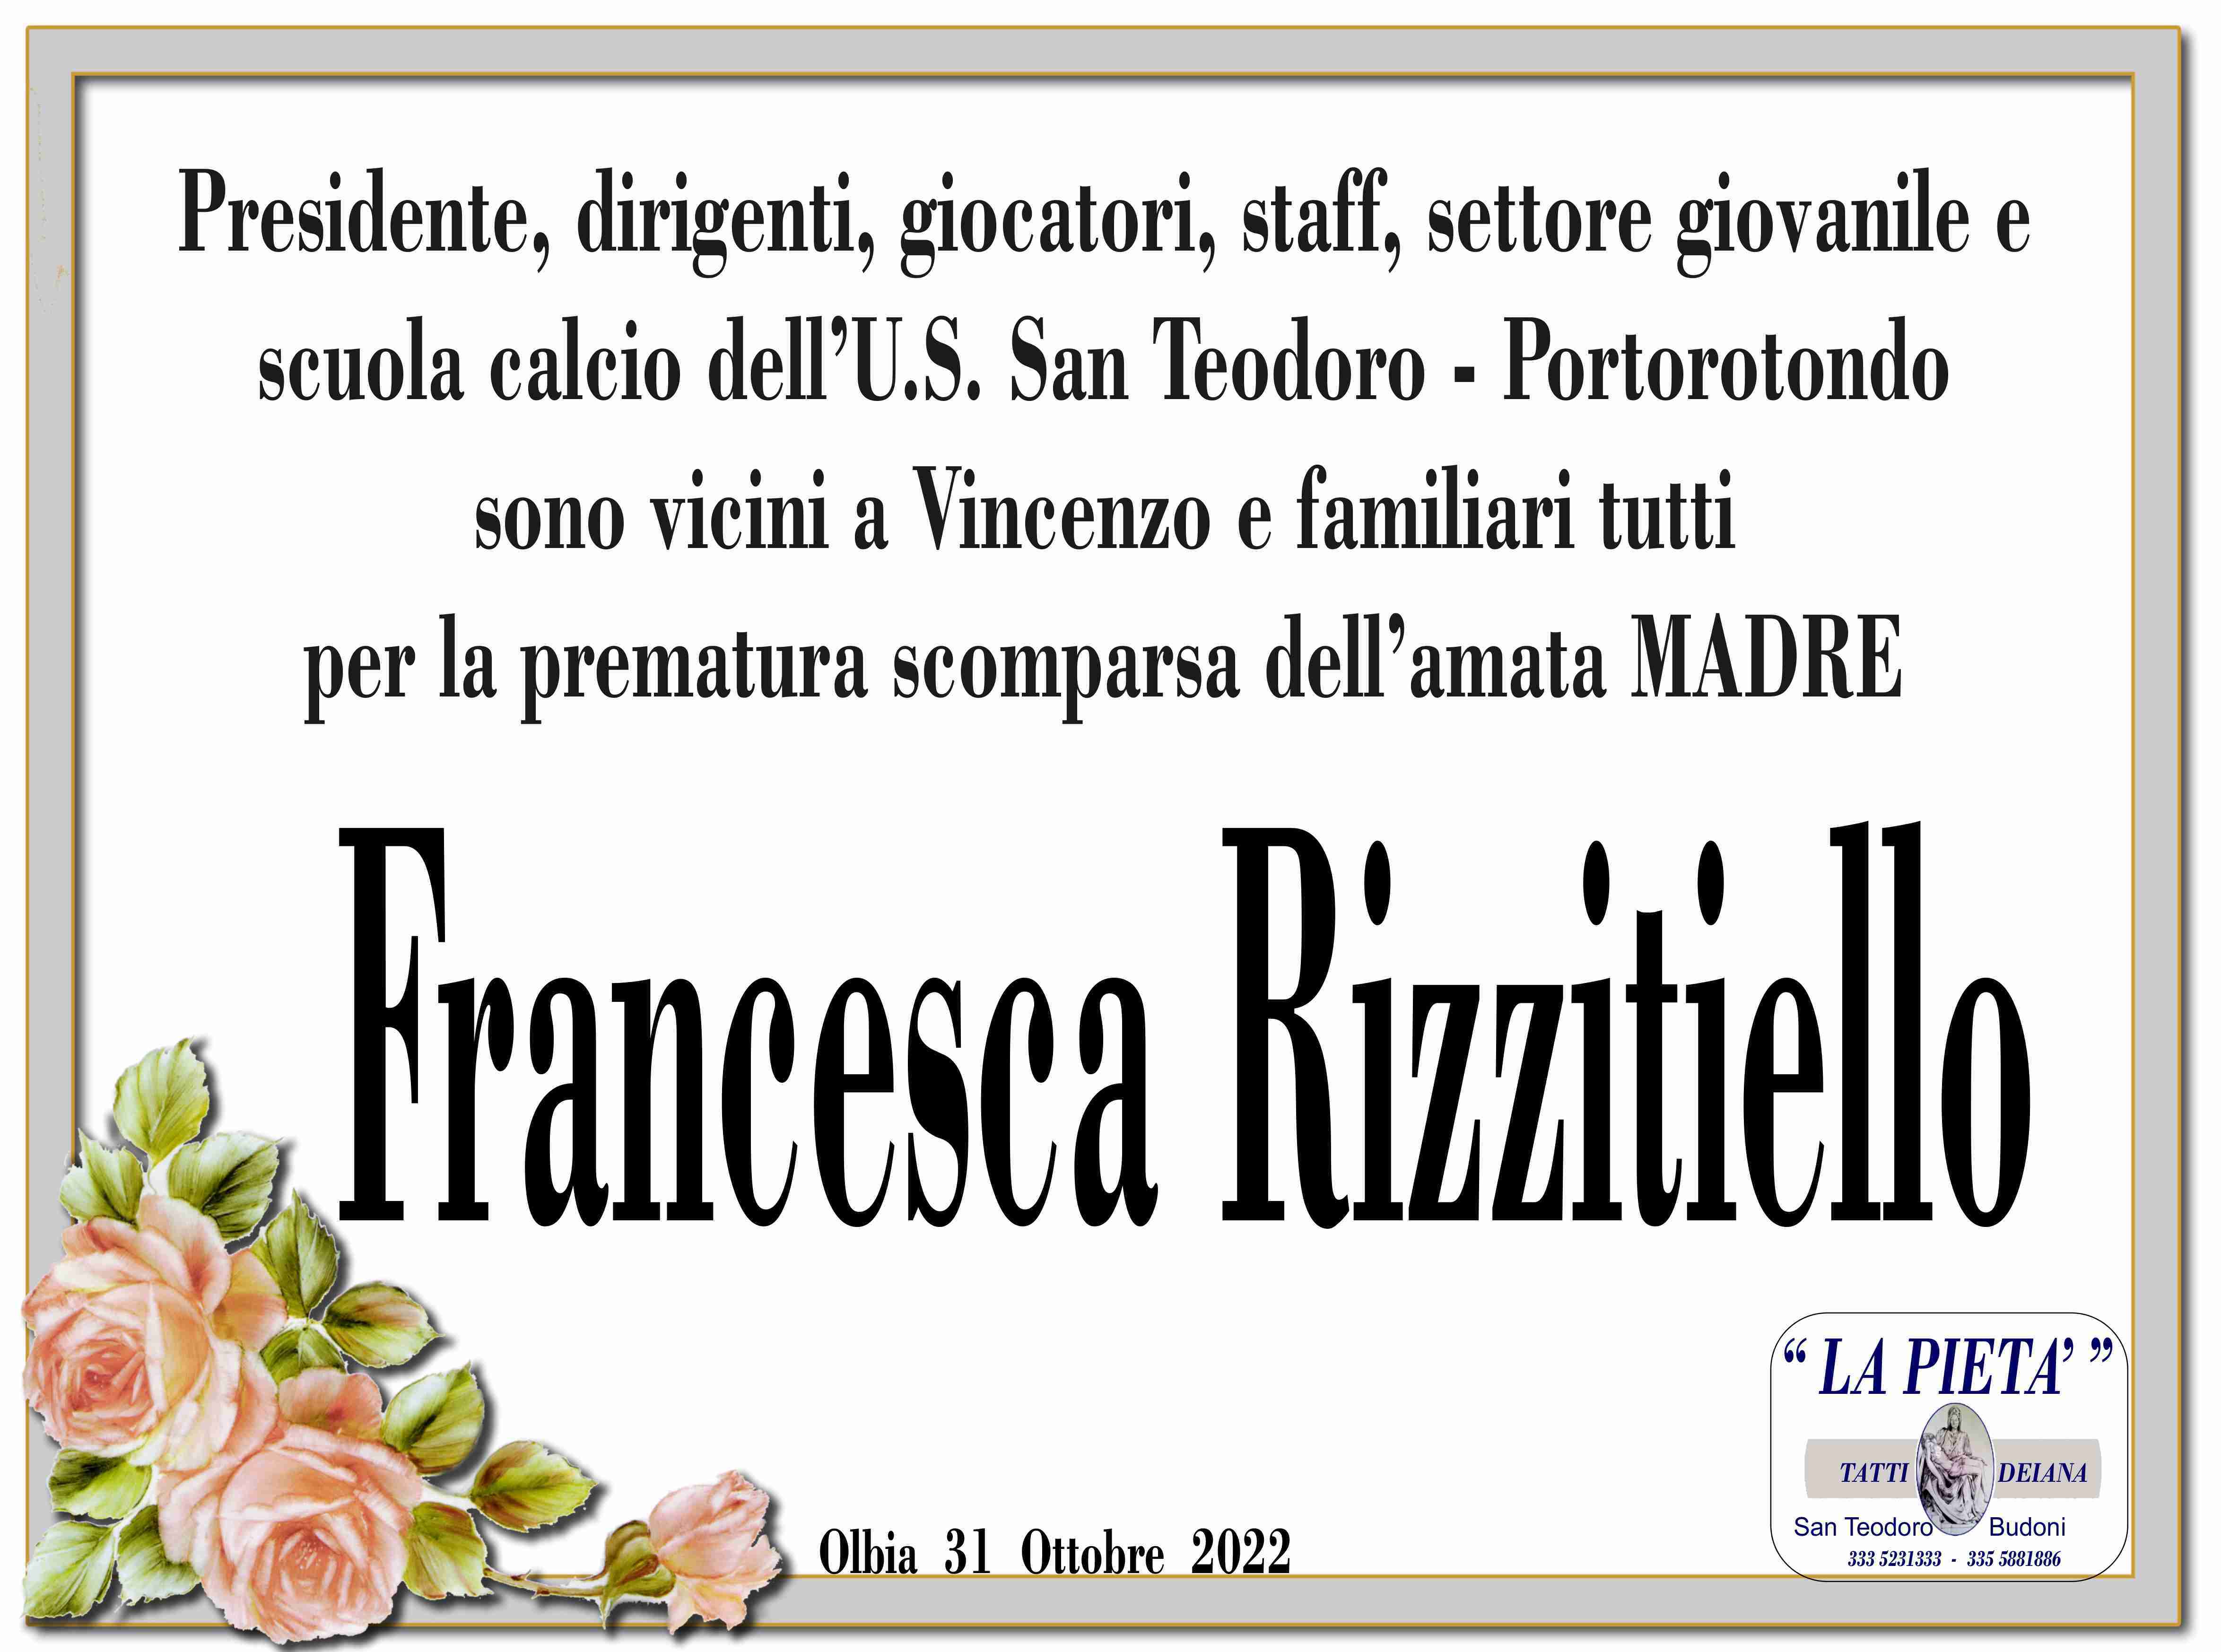 Francesca Rizzitiello